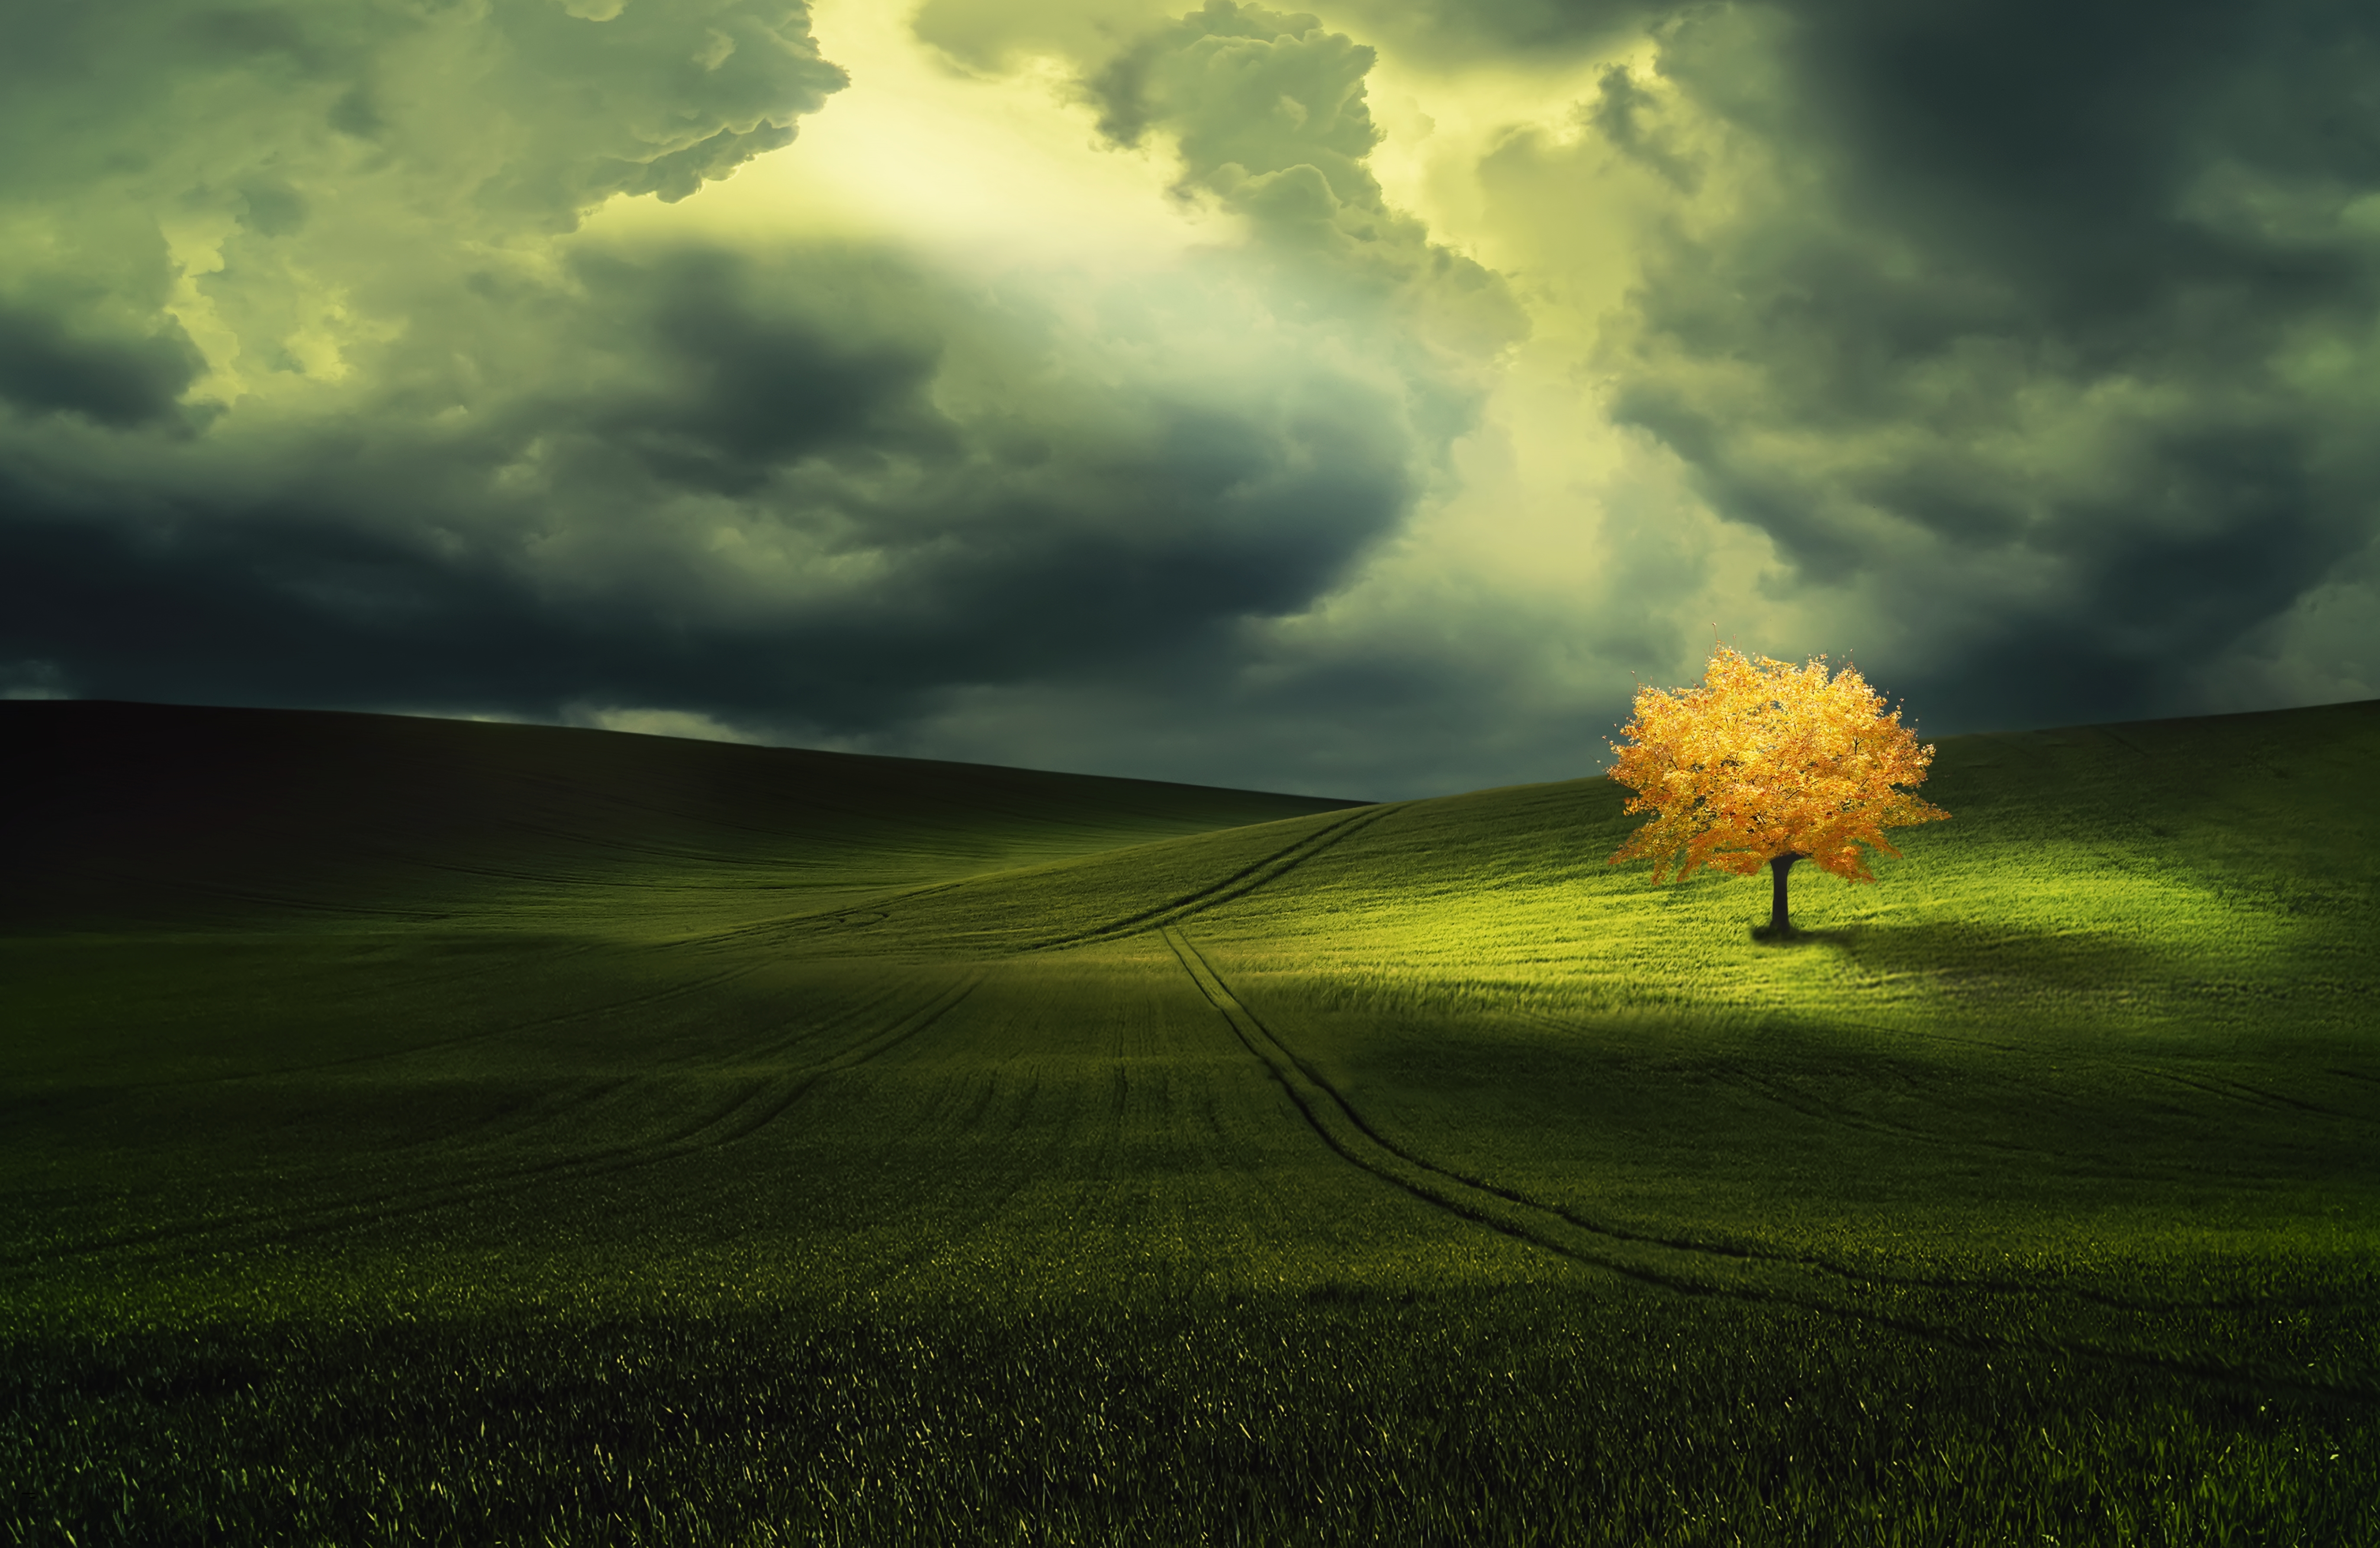 Обои на рабочий стол: Деревья, Осень, Облака, Дерево, Зелень, Поле,  Земля/природа, Одинокое Дерево - скачать картинку на ПК бесплатно № 396620